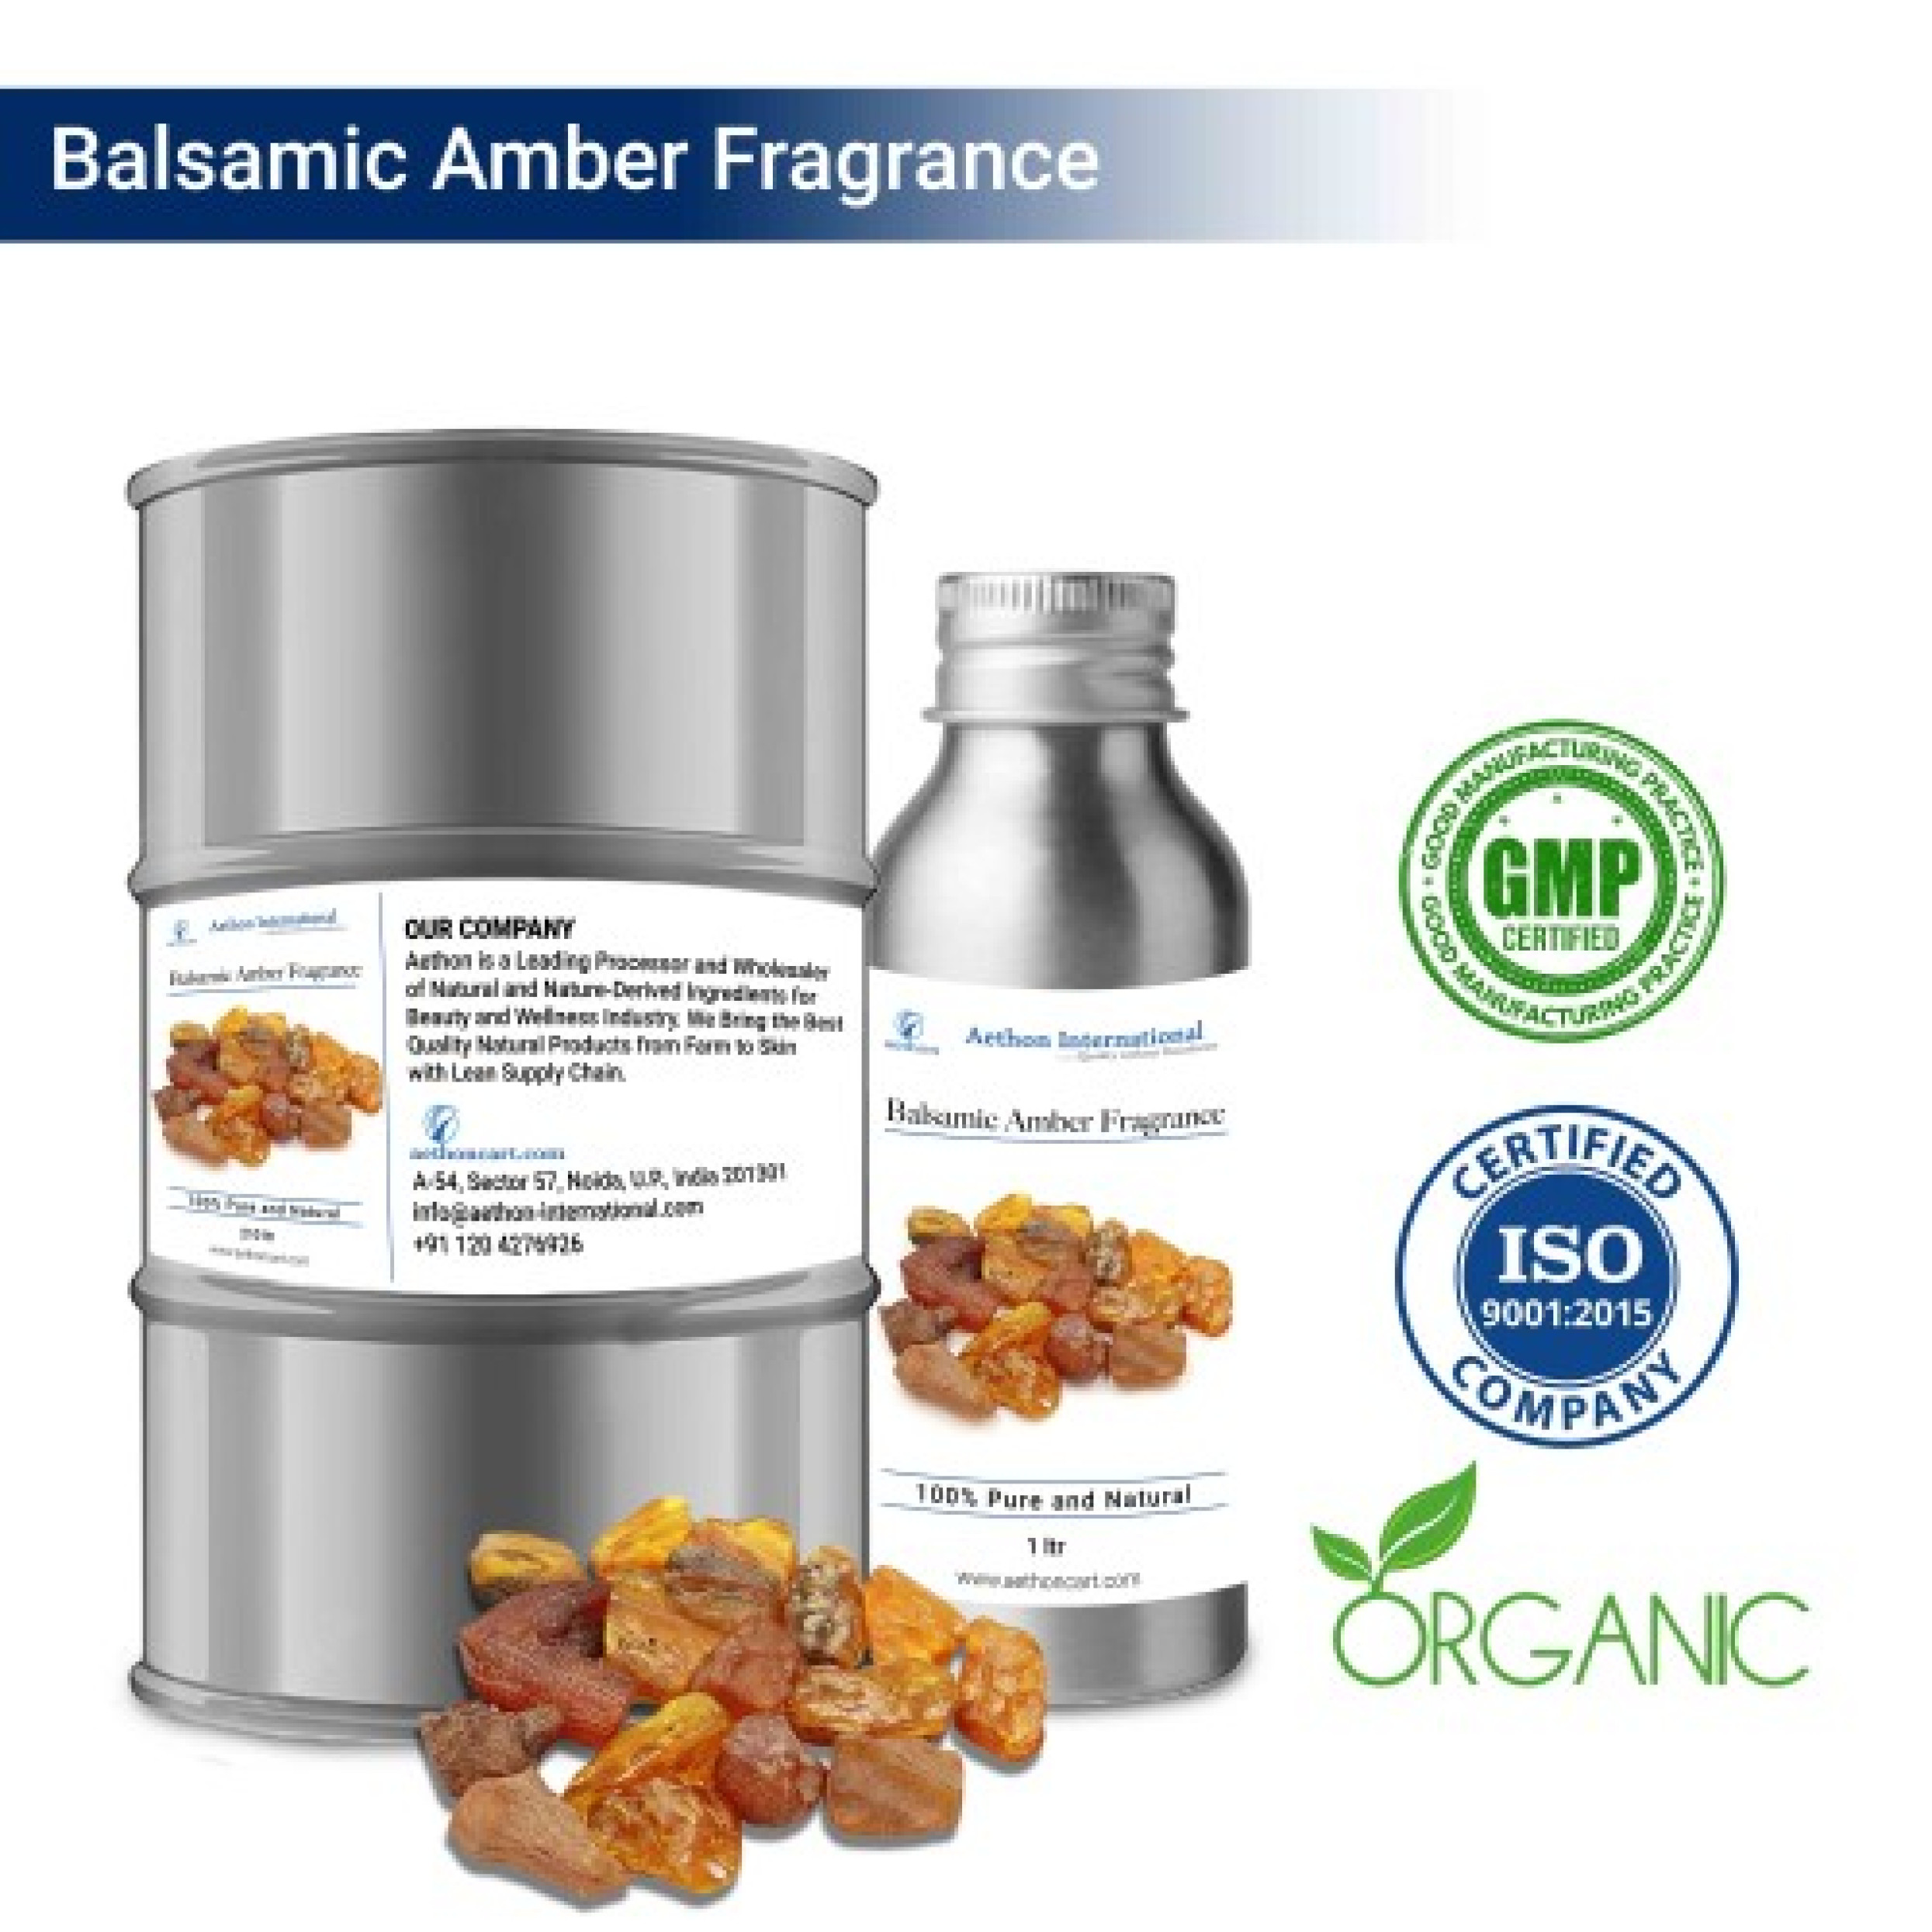 Balsamic Amber Fragrance